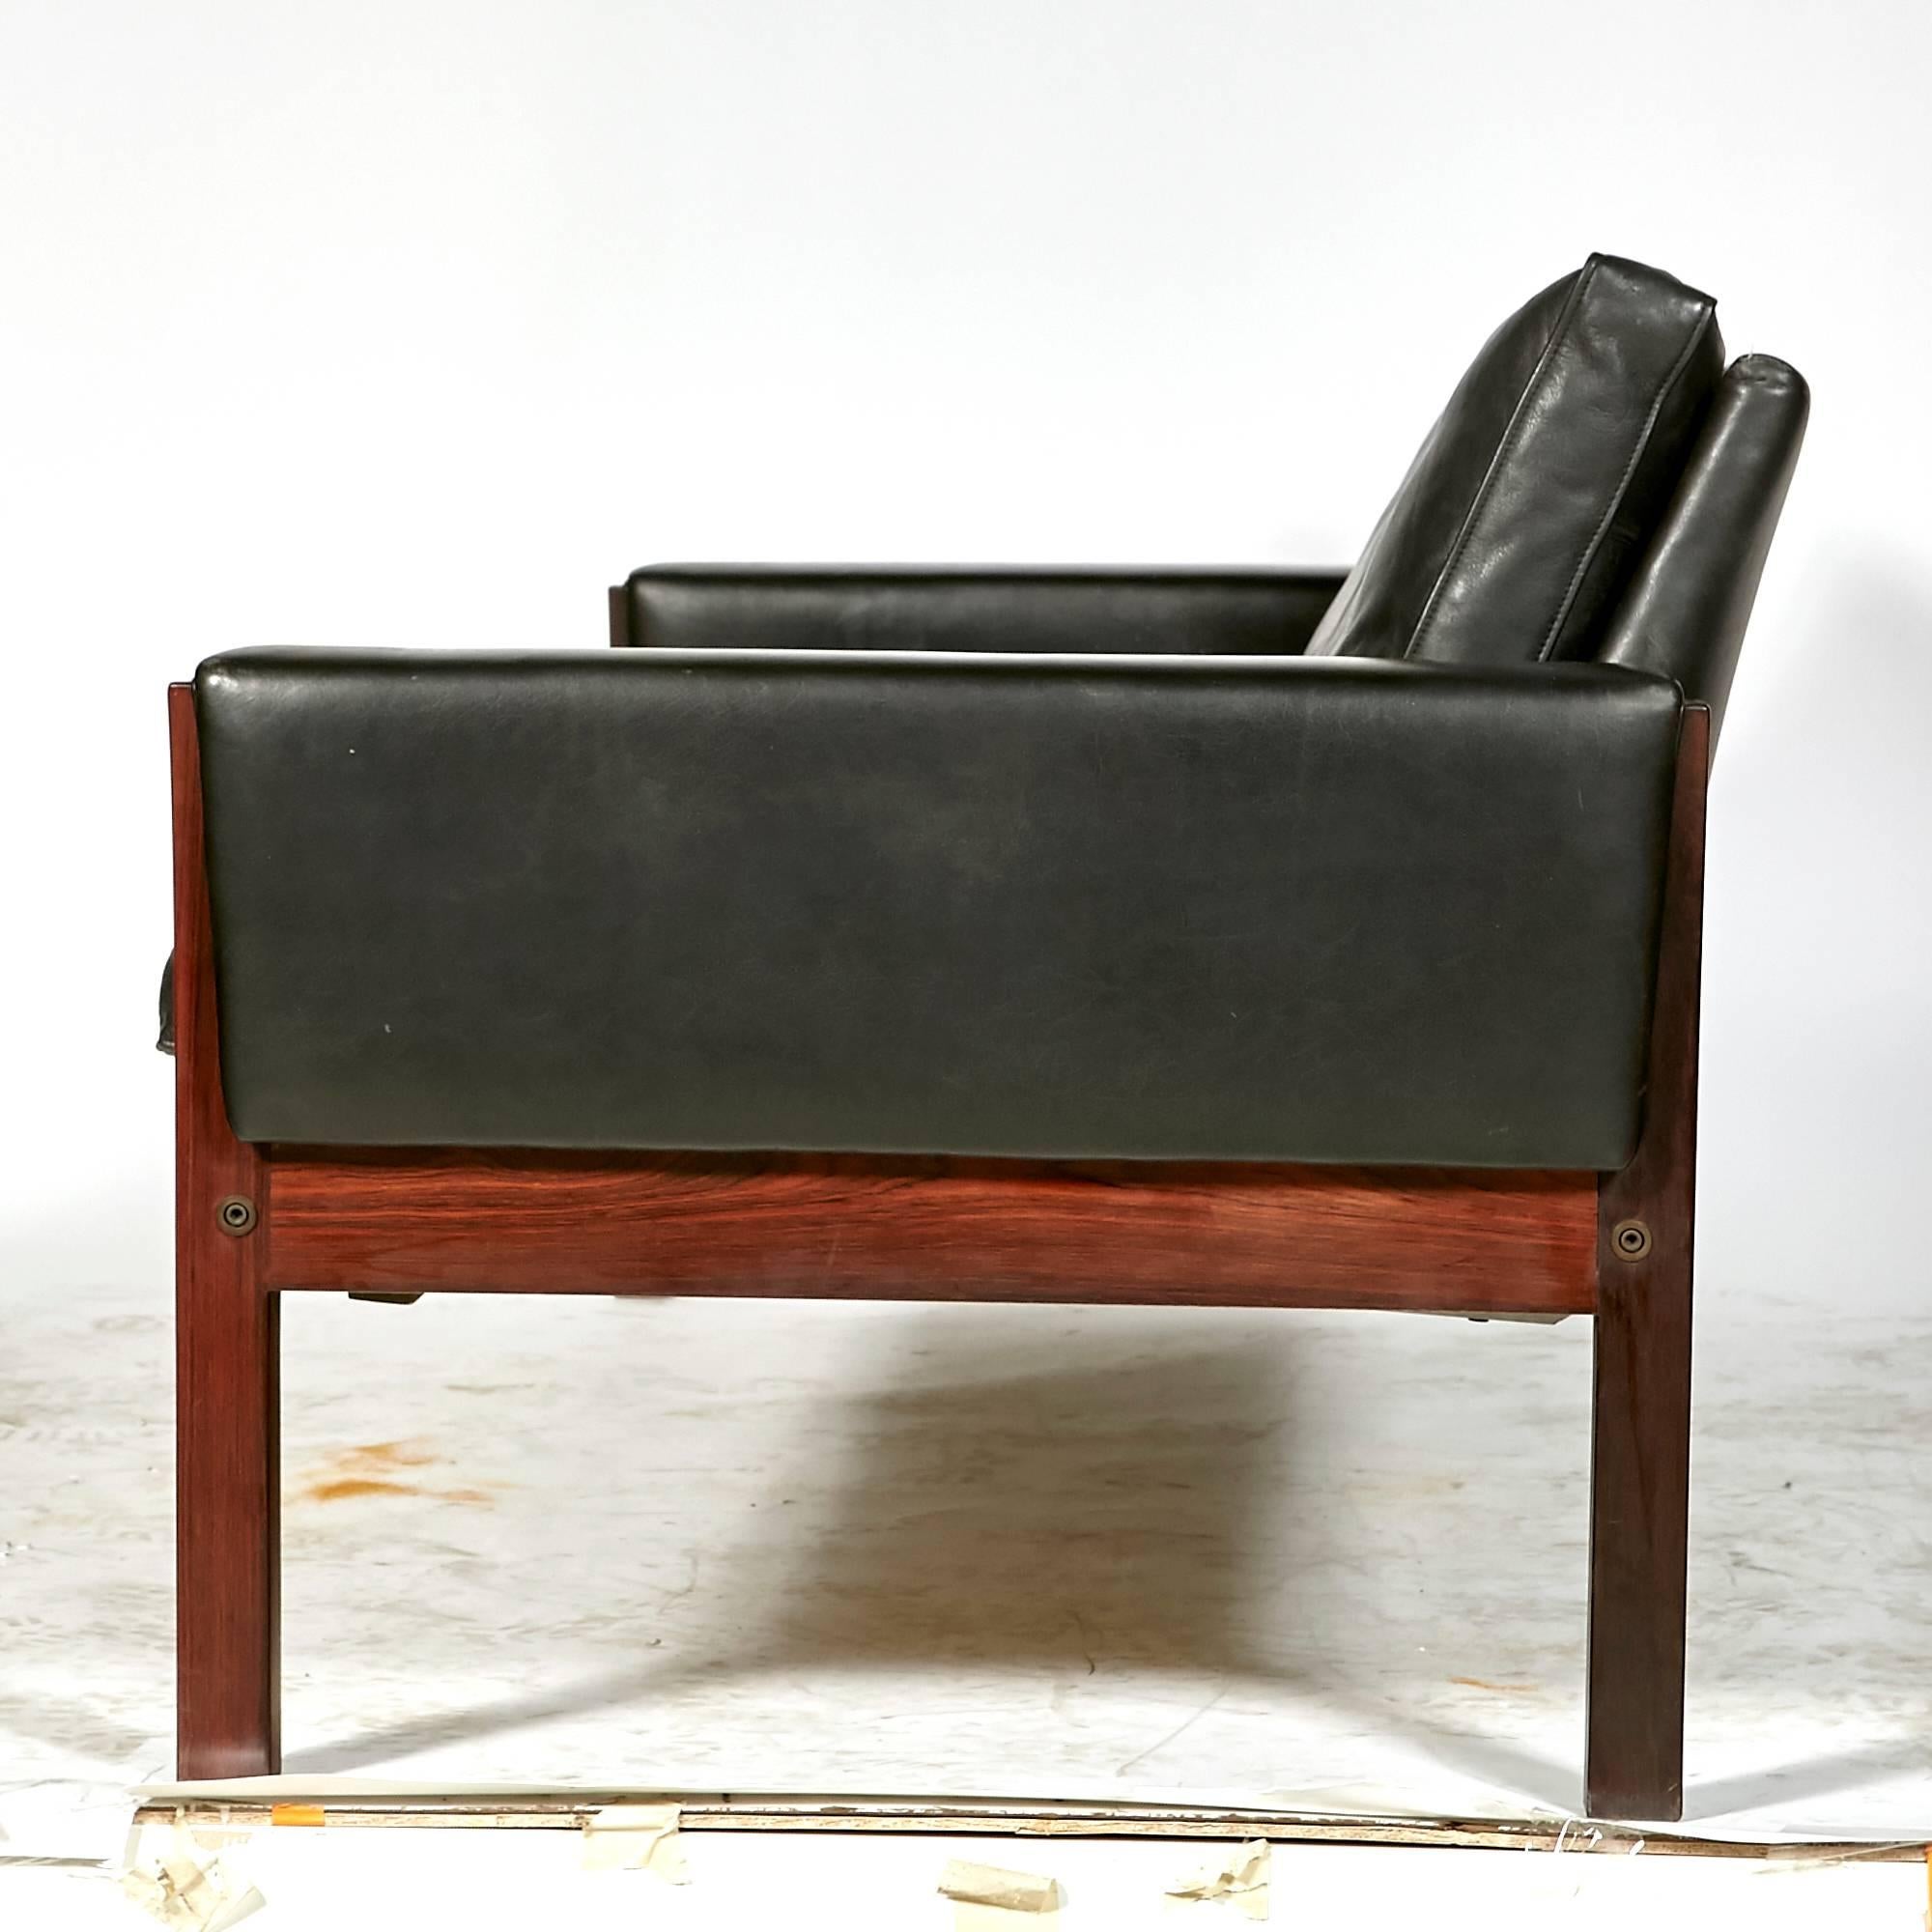 Hans J. Wegner Rosewood and Black Leather Sofa, Denmark 1